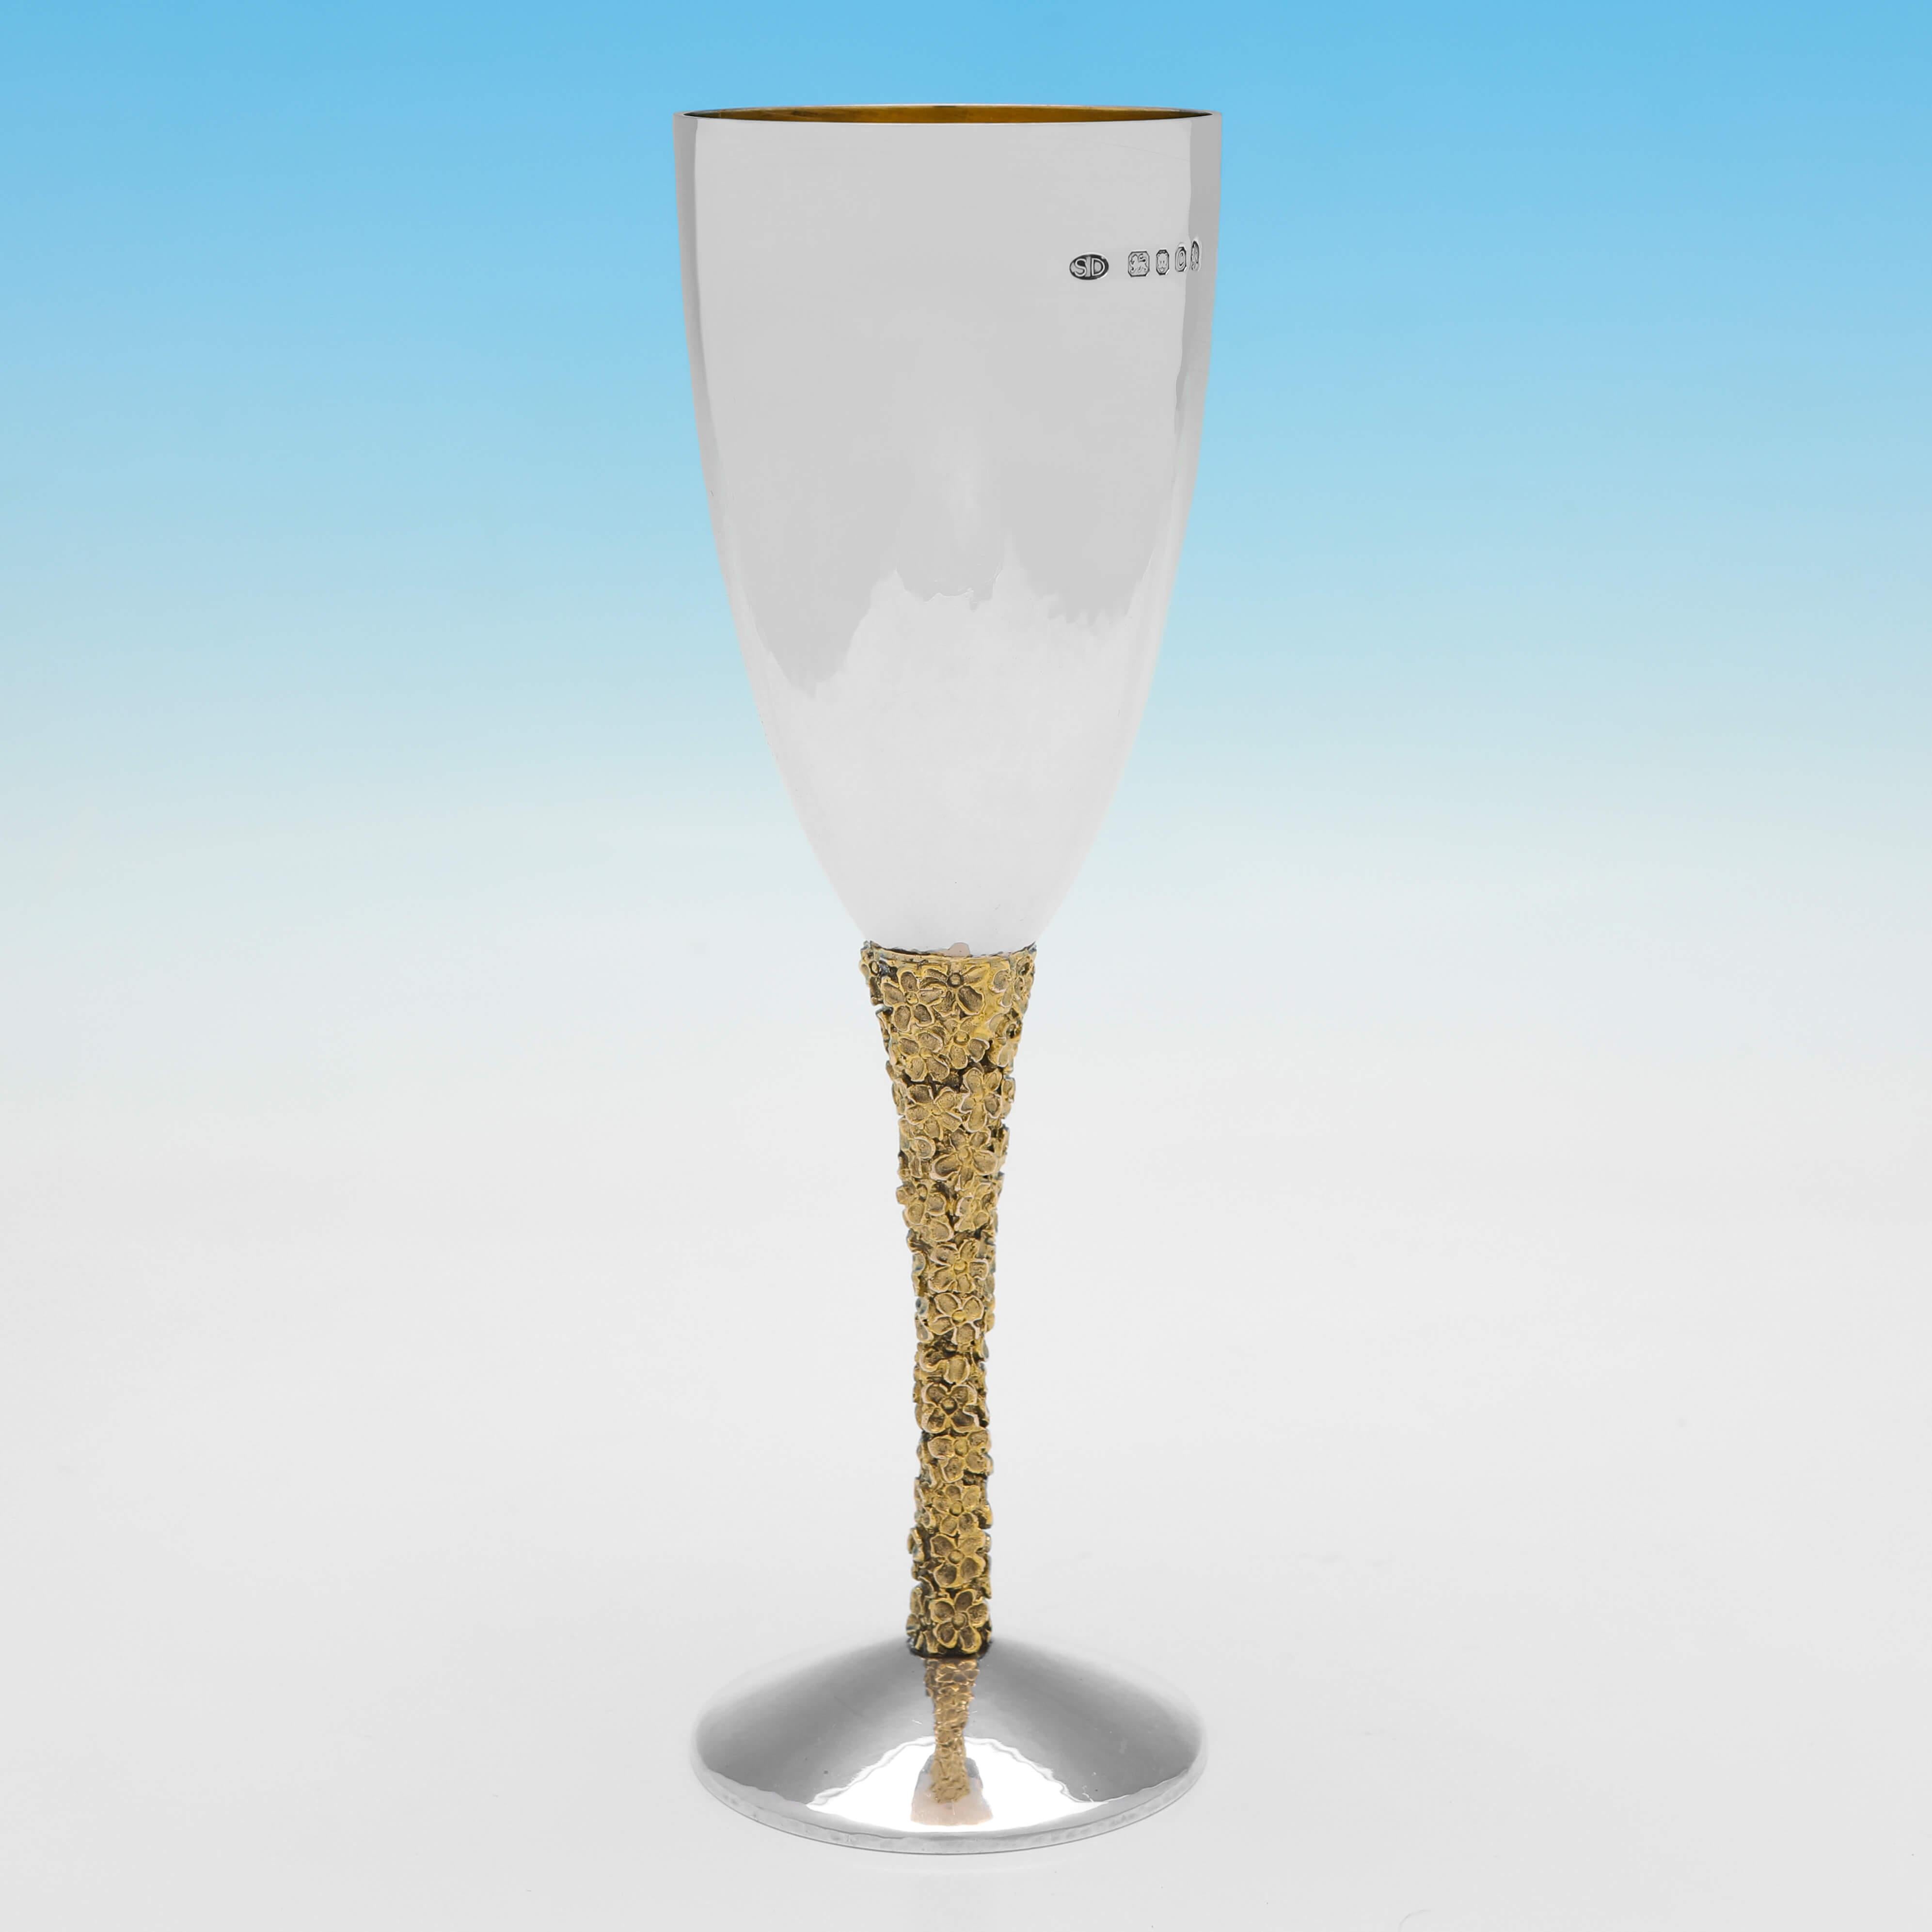 Dieses hübsche Paar Champagnerflöten aus Sterlingsilber wurde 1977 in London von Stuart Devlin gepunzt und hat eine gegossene und vergoldete Blumendekoration an den Stielen, eine handgehämmerte Oberfläche und vergoldete Innenseiten. 

Jede